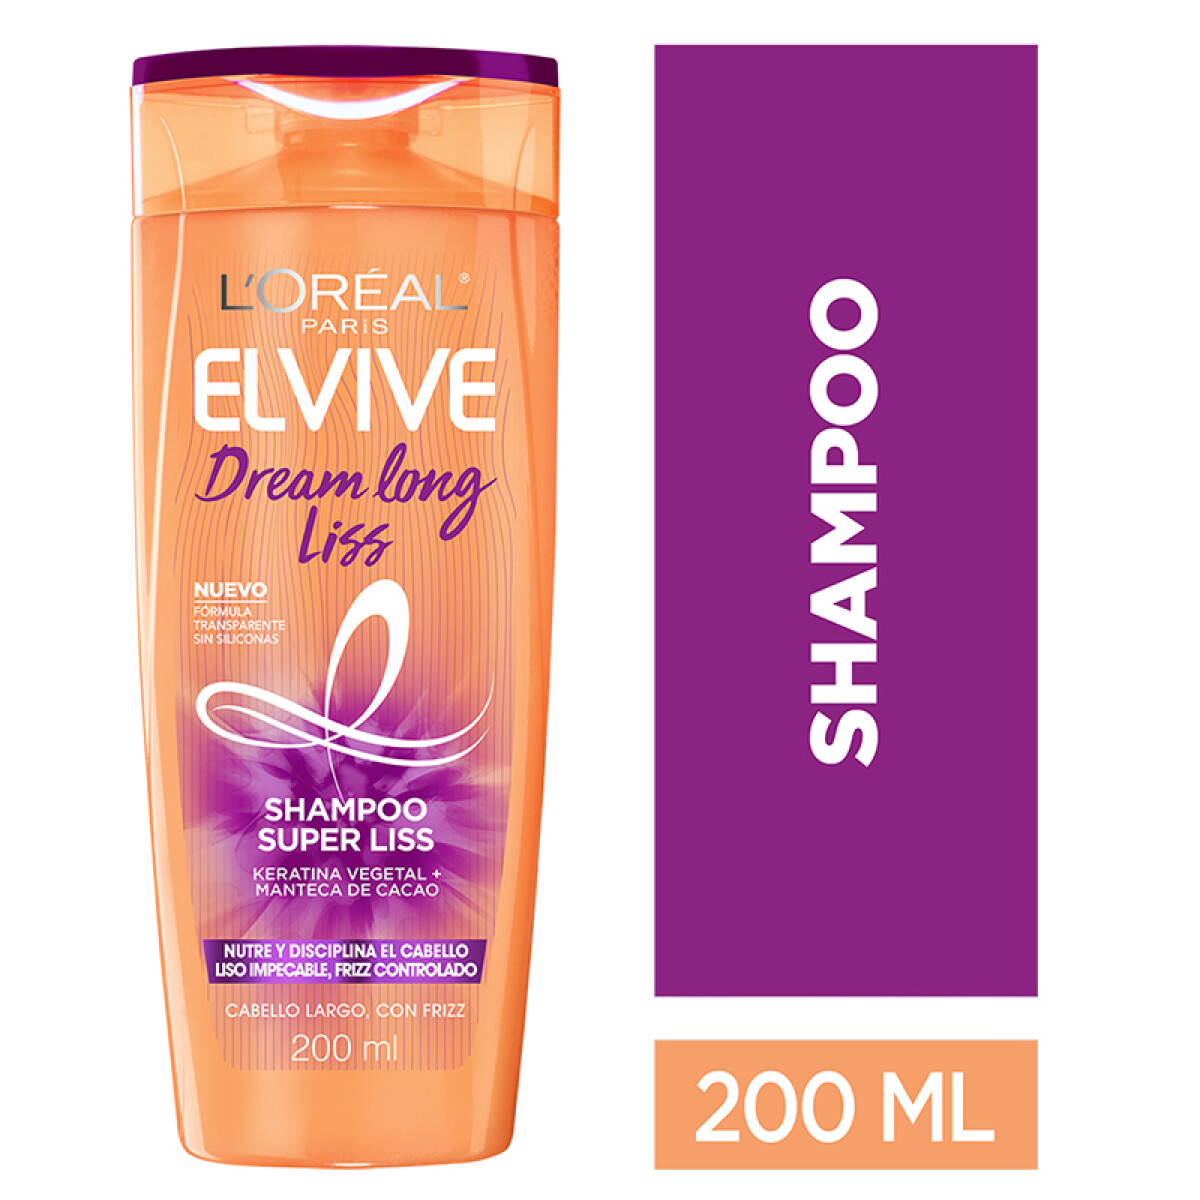 L´oréal Elvive shampoo - Dream long liss 200 ml 